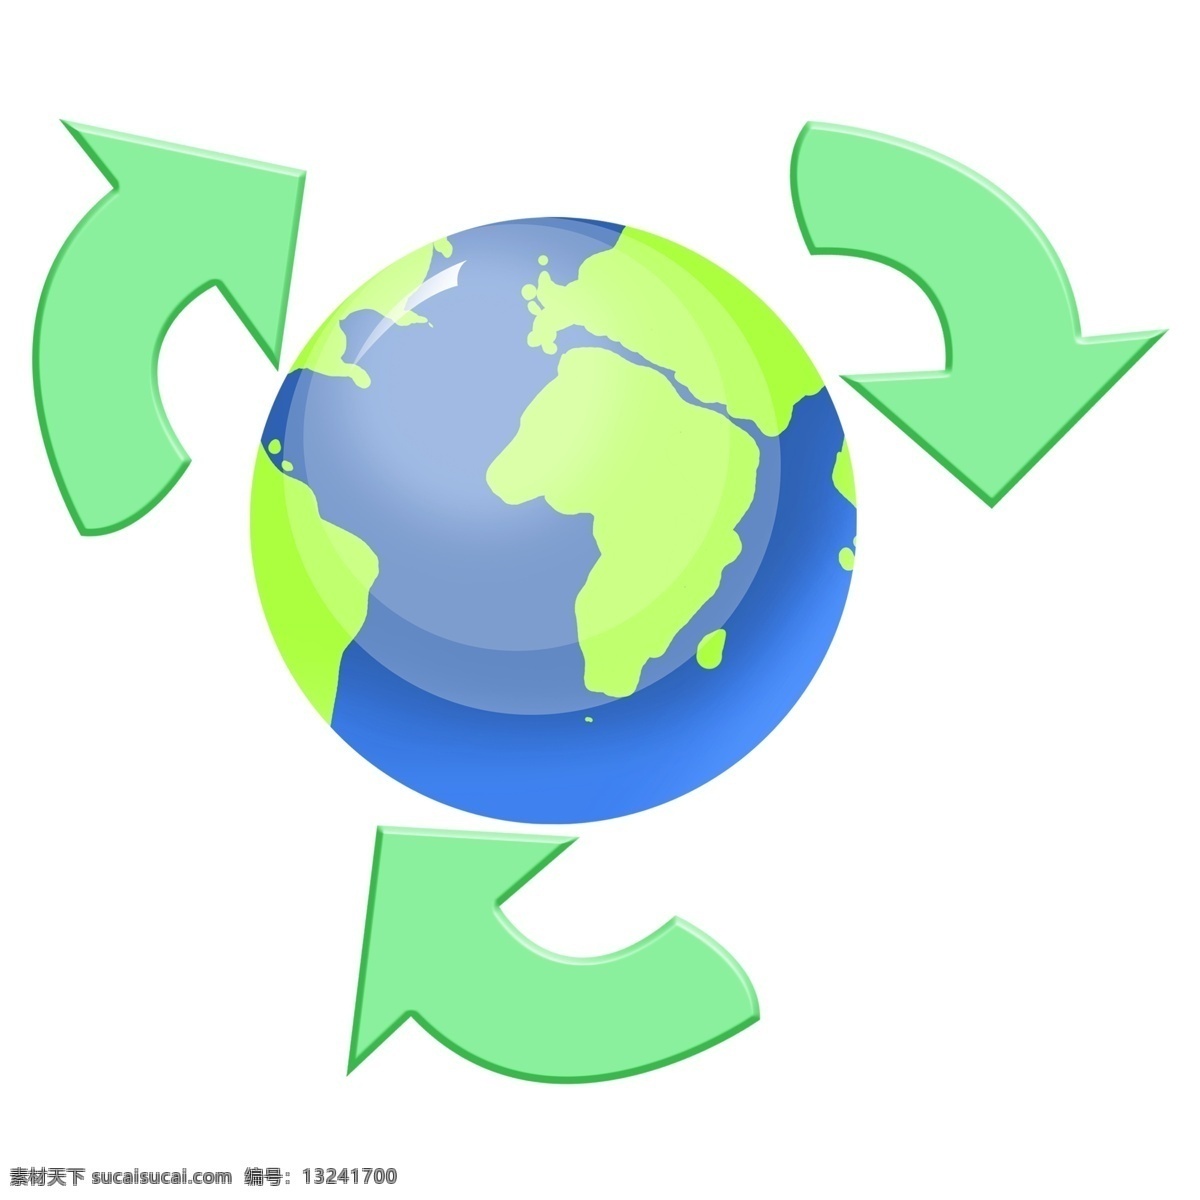 绿色 循环 环保 插画 循环利用 绿色环保 循环环保 绿色环保插画 环保日 保护地球 爱护环境